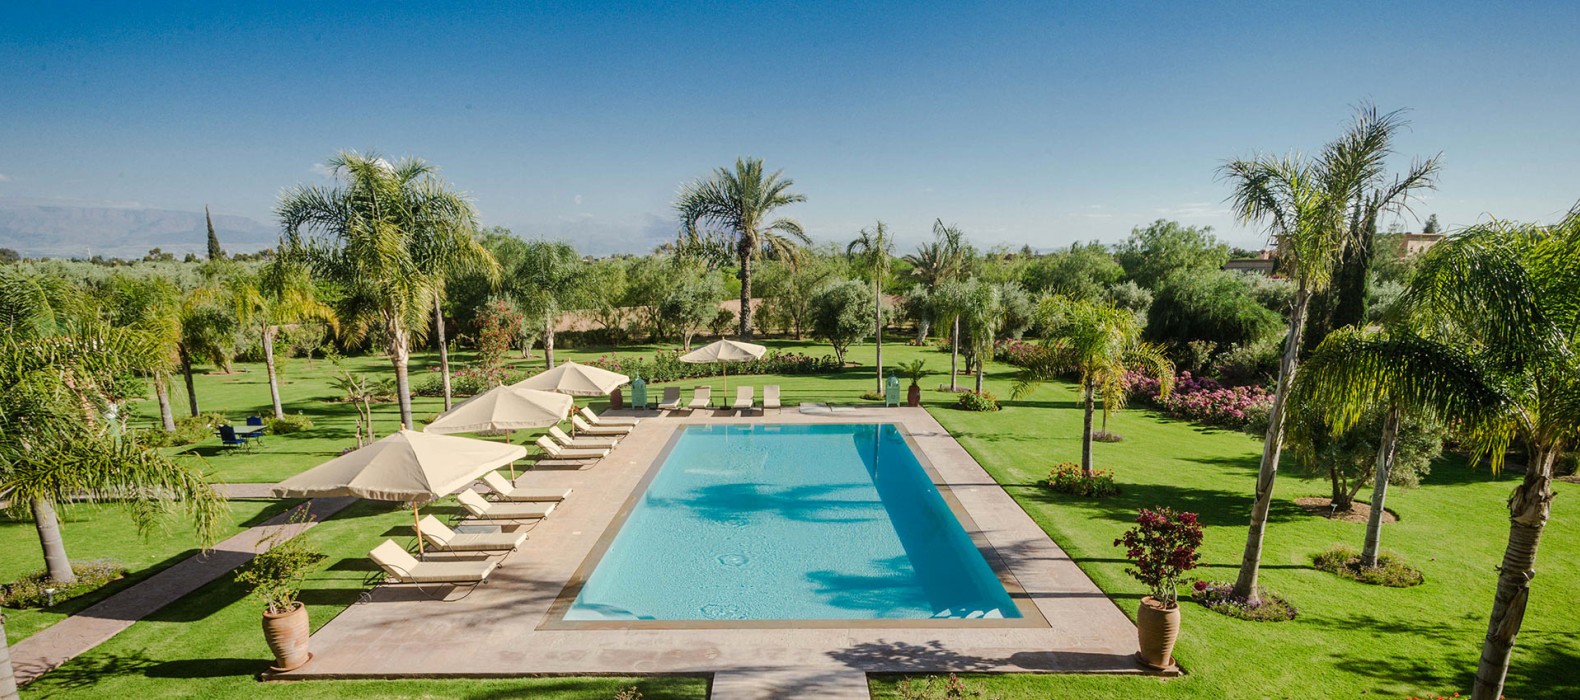 Pool view of Villa Rosalie in Marrakech